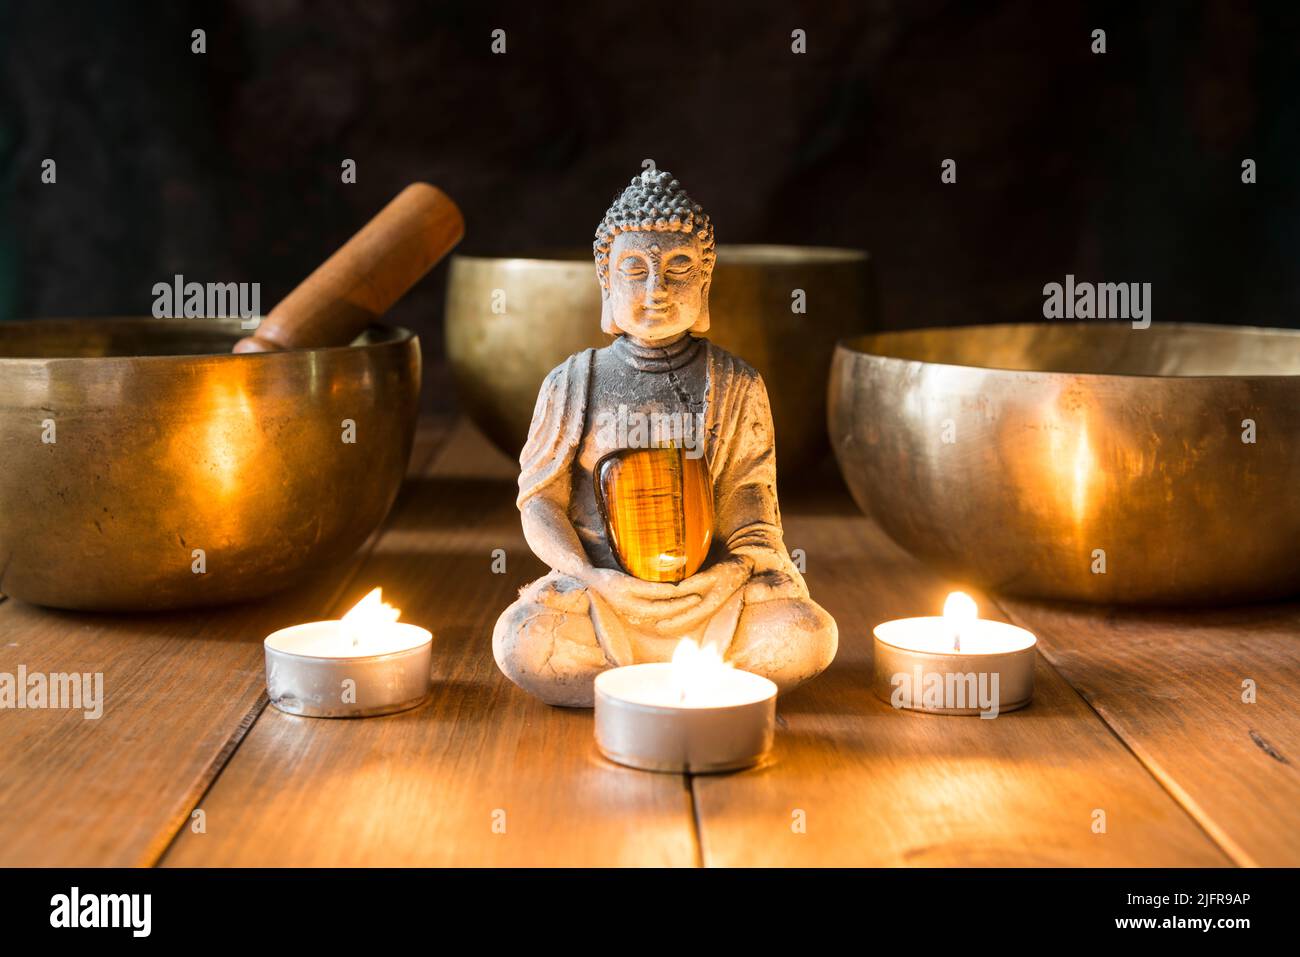 Stillleben mit Klangschalen, Mineralien, Kerzen und einer Buddha-Figur auf Holzbrettern und einem dunklen Hintergrund. Kleiner Altar mit kleiner Kerze beleuchtet Stockfoto